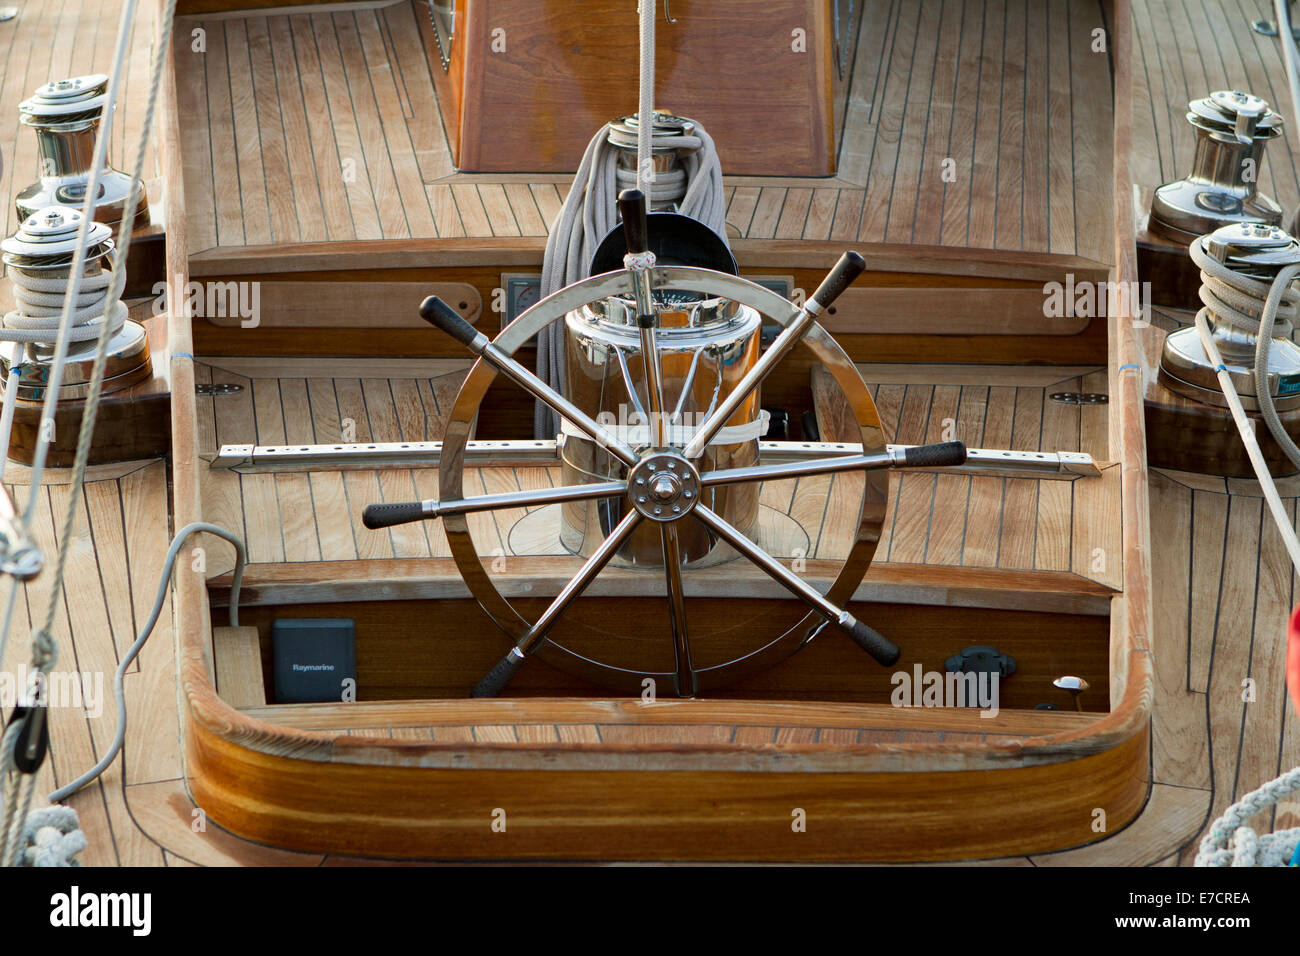 Imperia, Italie. 14 septembre 2014. Le volant d'un yacht vintage participant à Vele d'Epoca classic yachts regatta. Banque D'Images